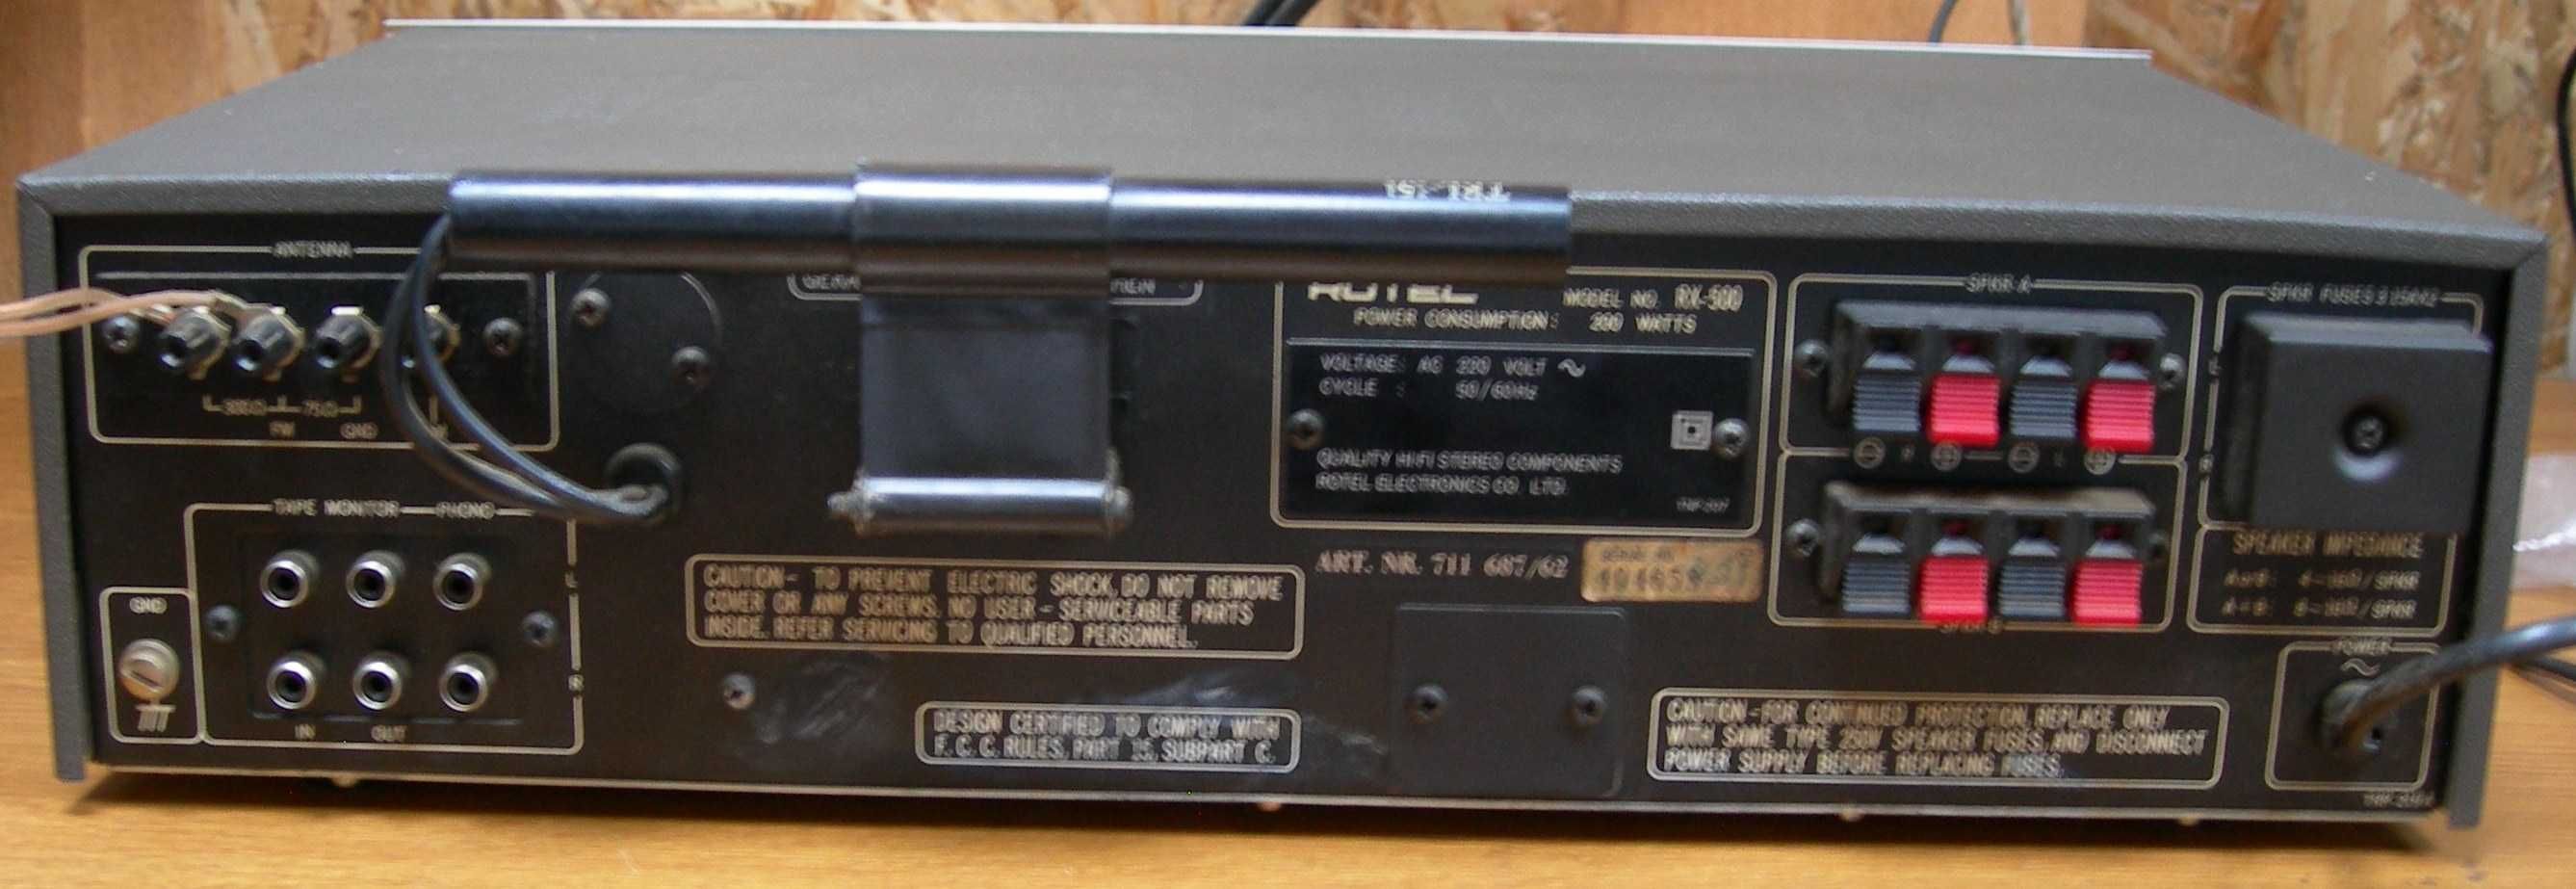 Vand un receiver Rotel RX-500